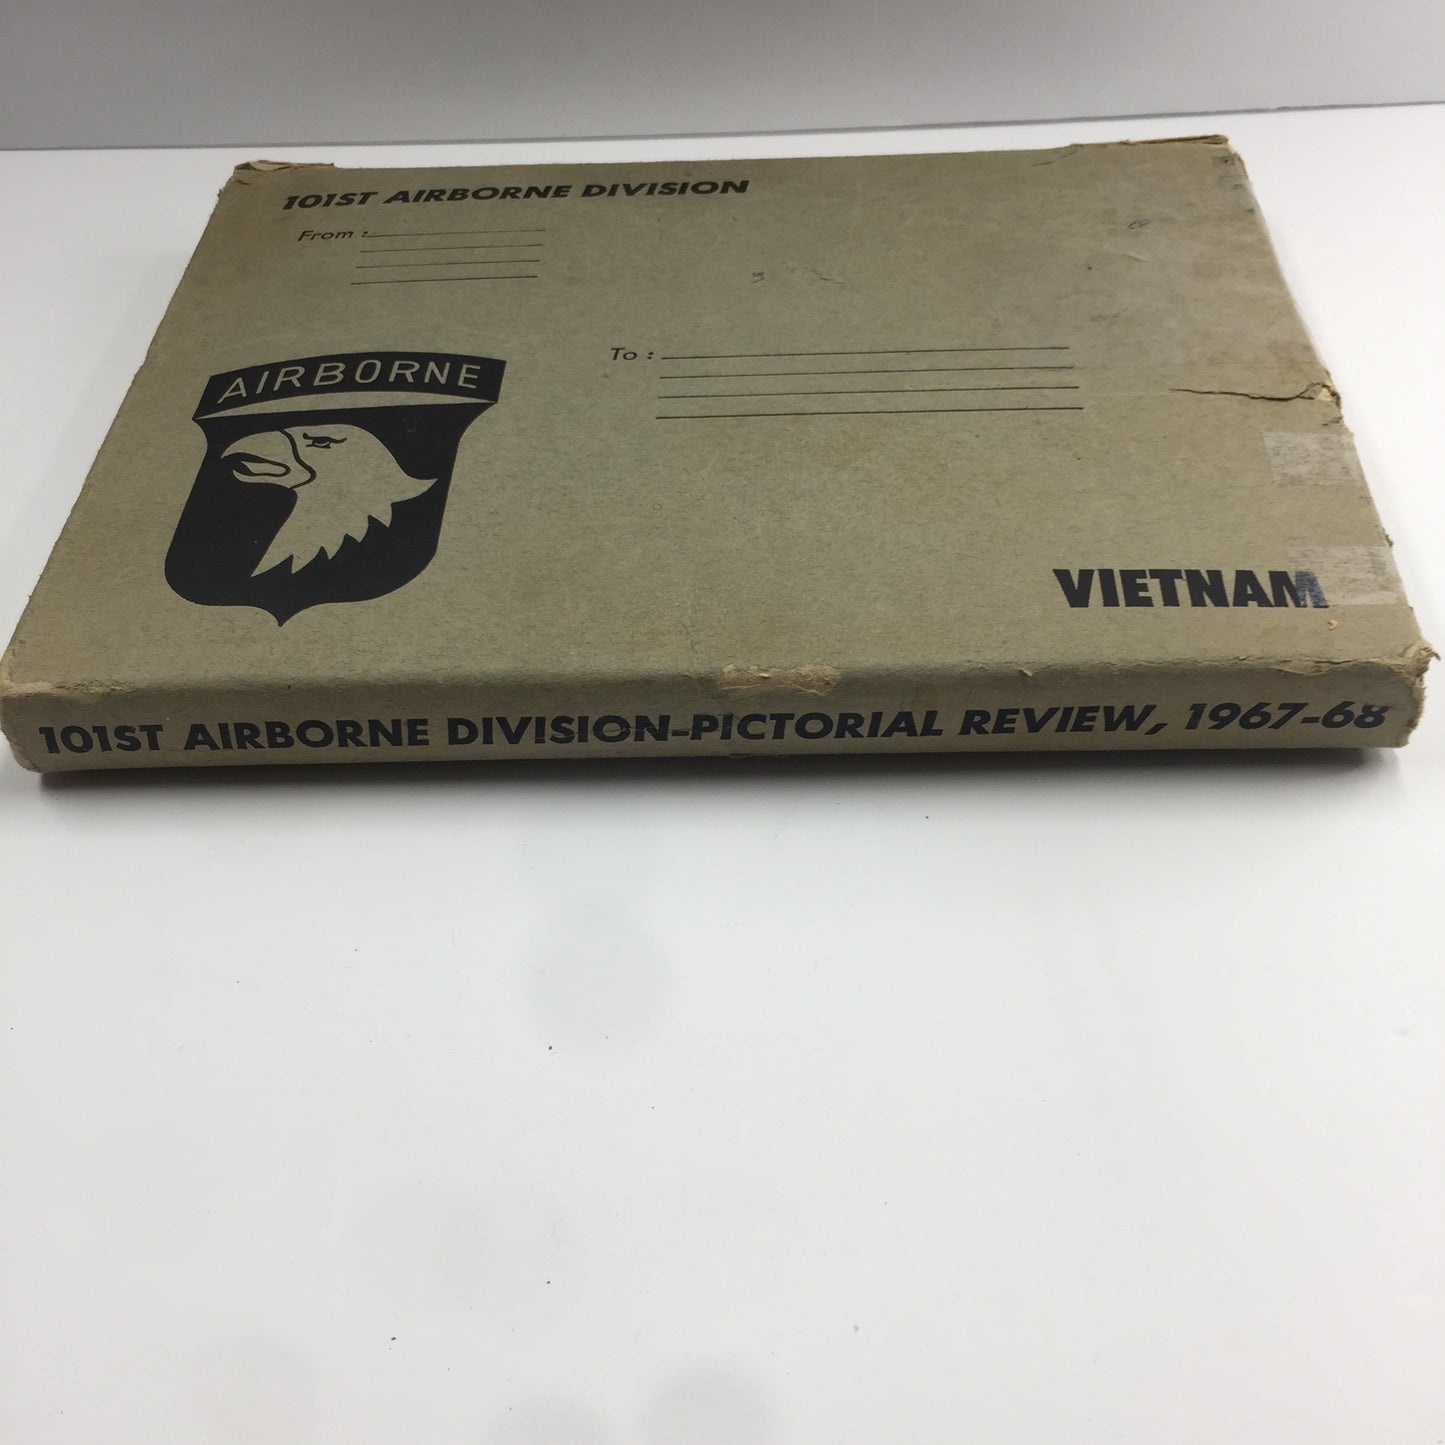 101st Airborne Division In Vietnam - Author Unknown - 1968